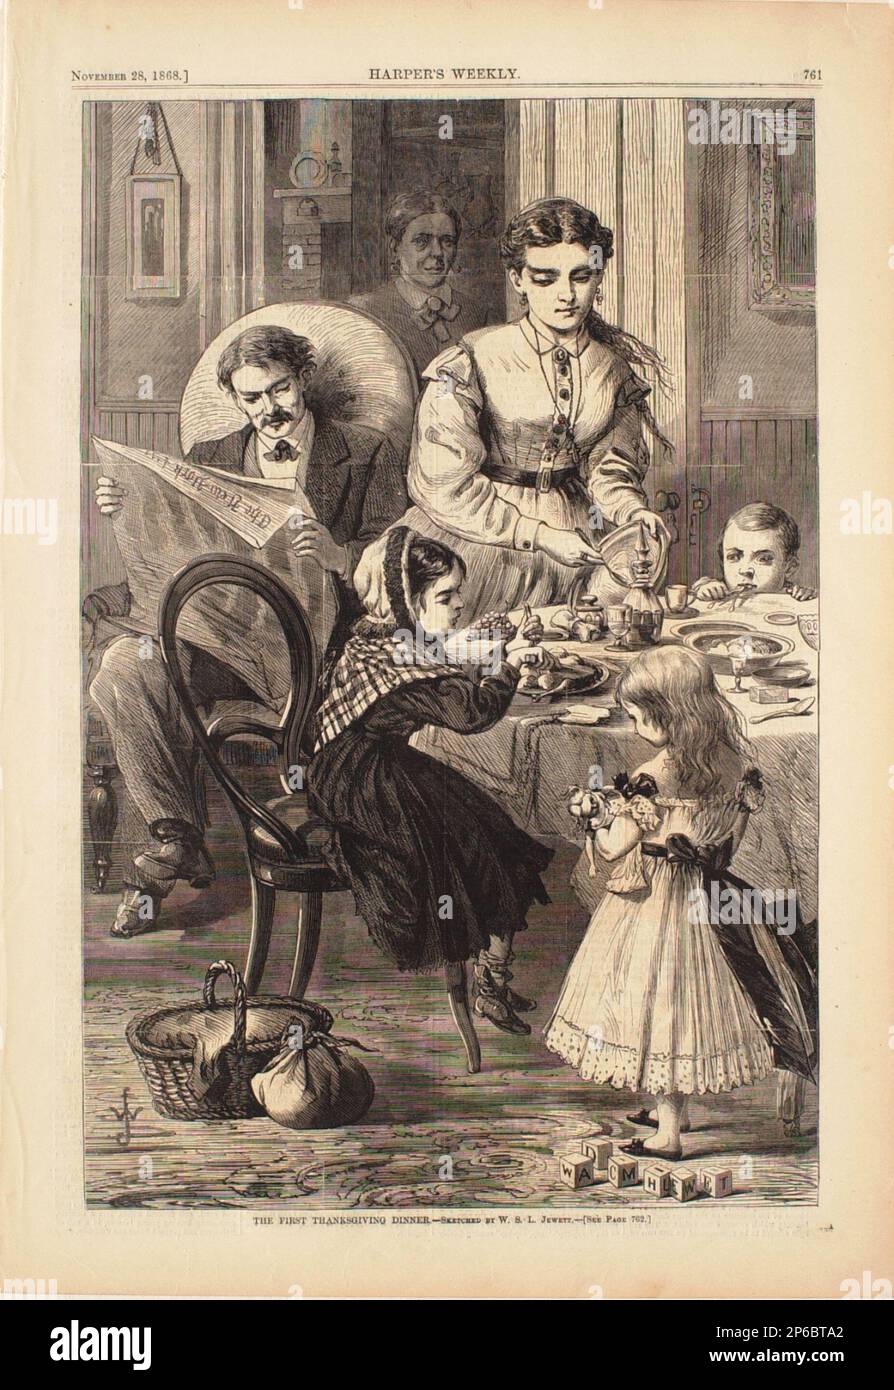 William S.L. Jewett, le premier dîner de Thanksgiving, 1868, gravure en bois sur papier. Banque D'Images